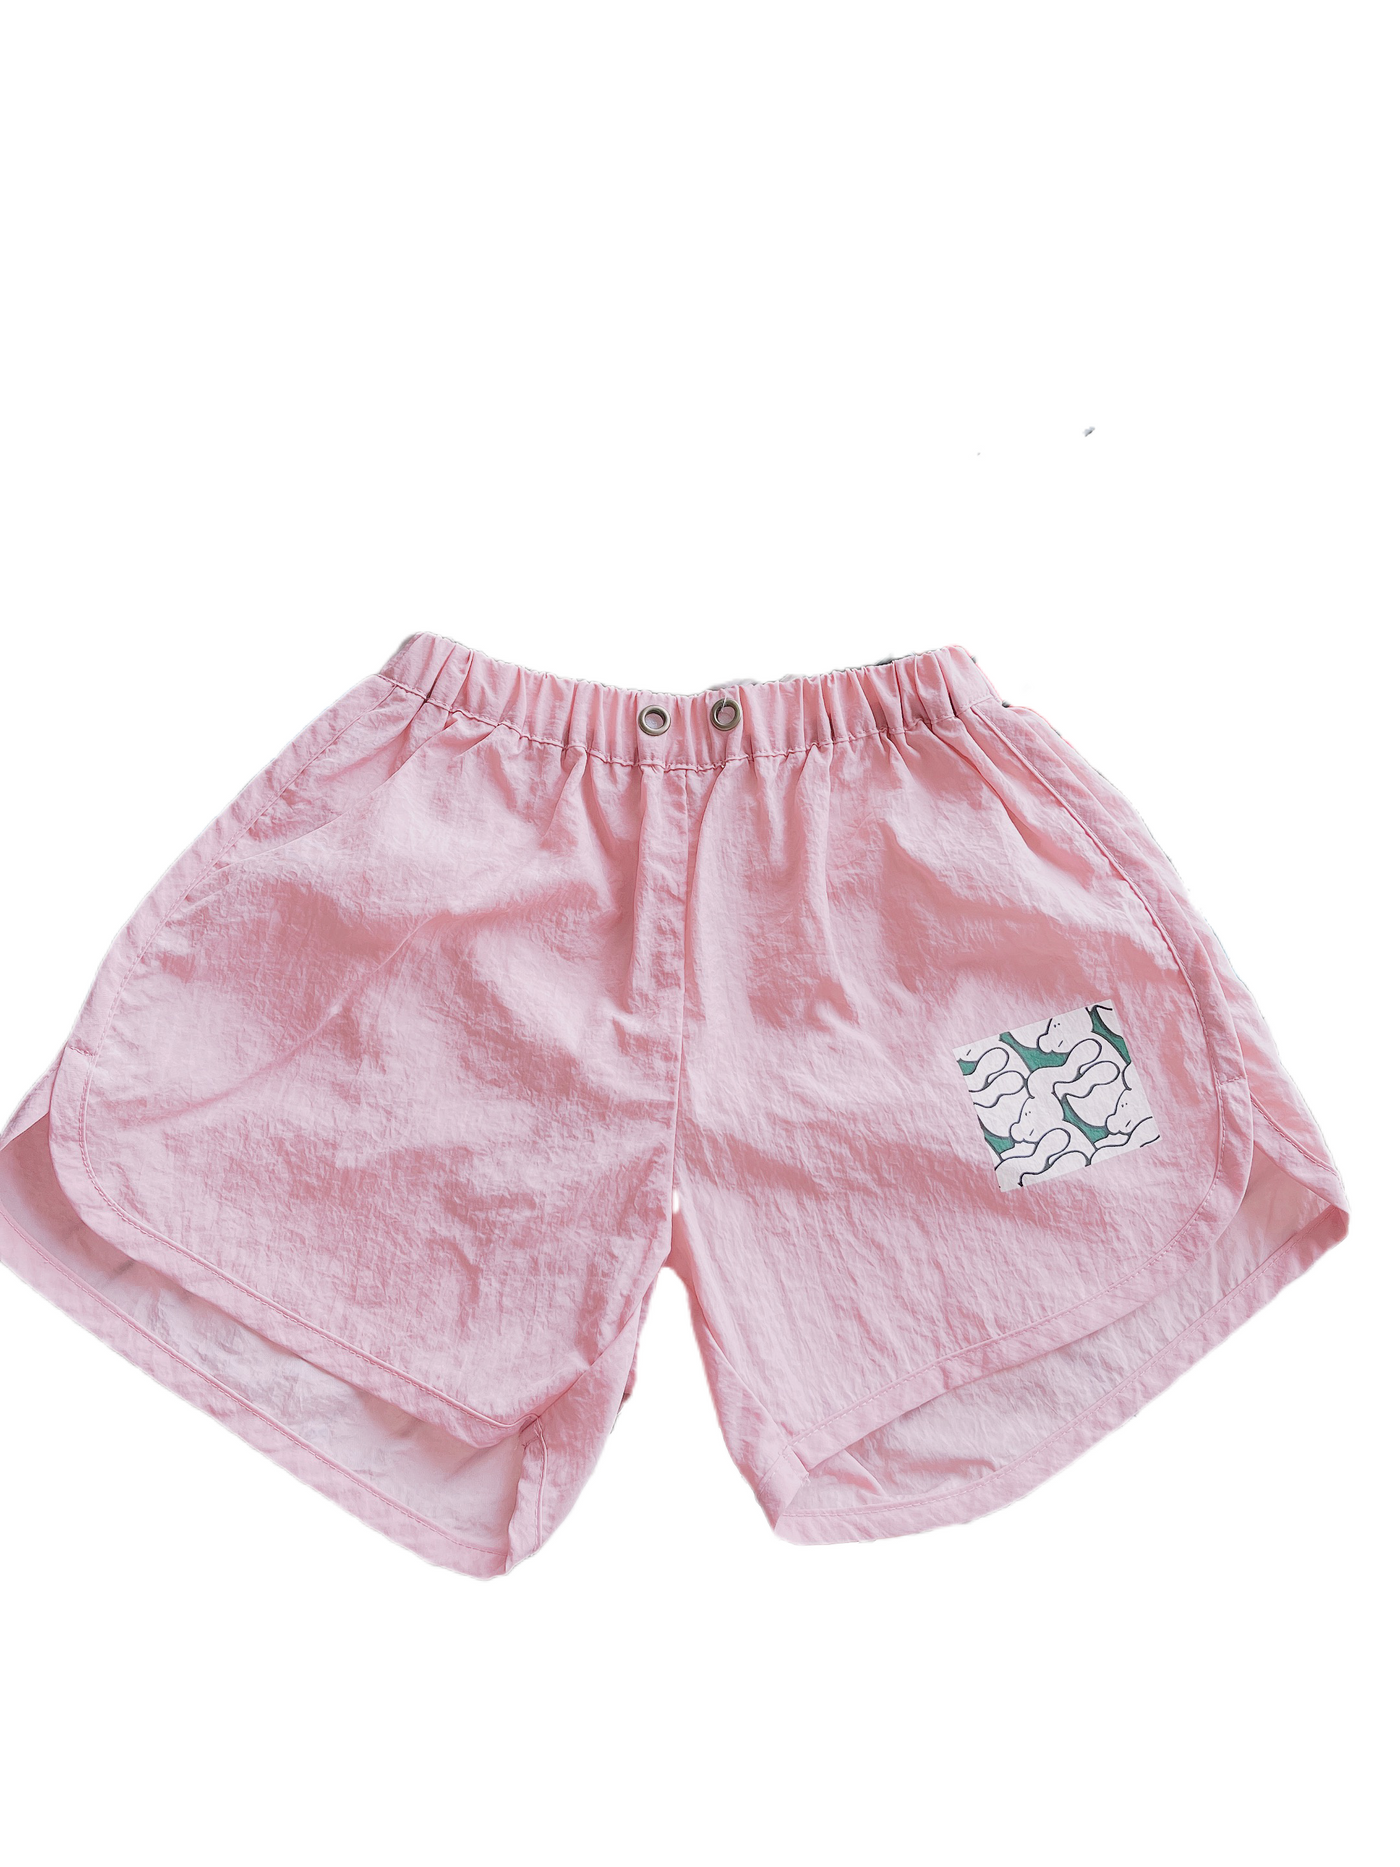 Girl Summer Shorts(6Y)